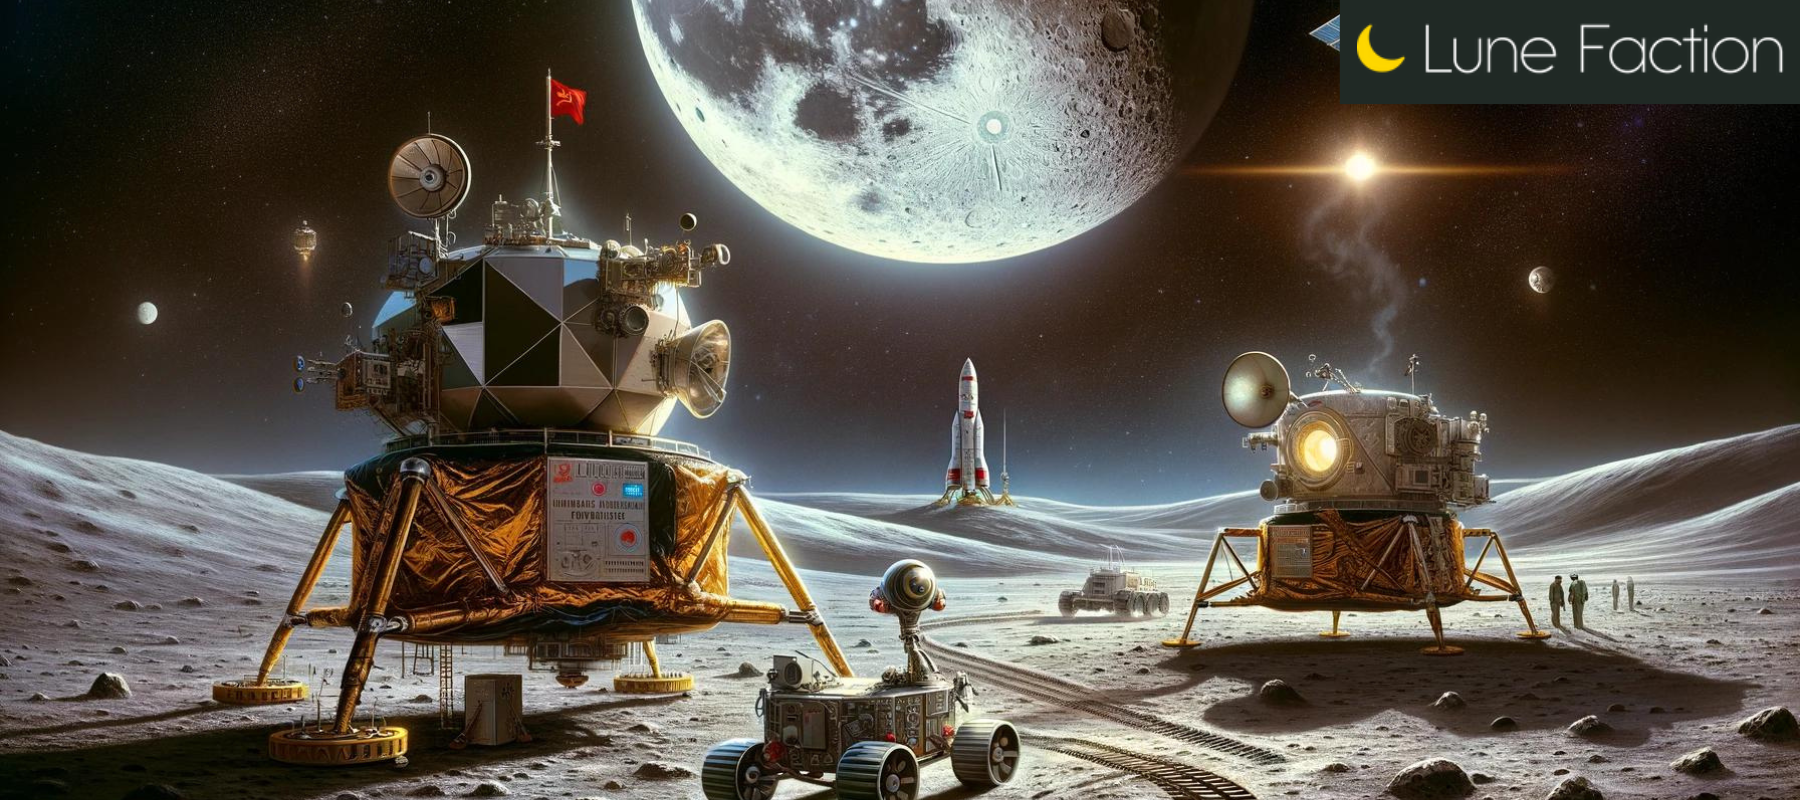 premier robot touchant le sol lunaire